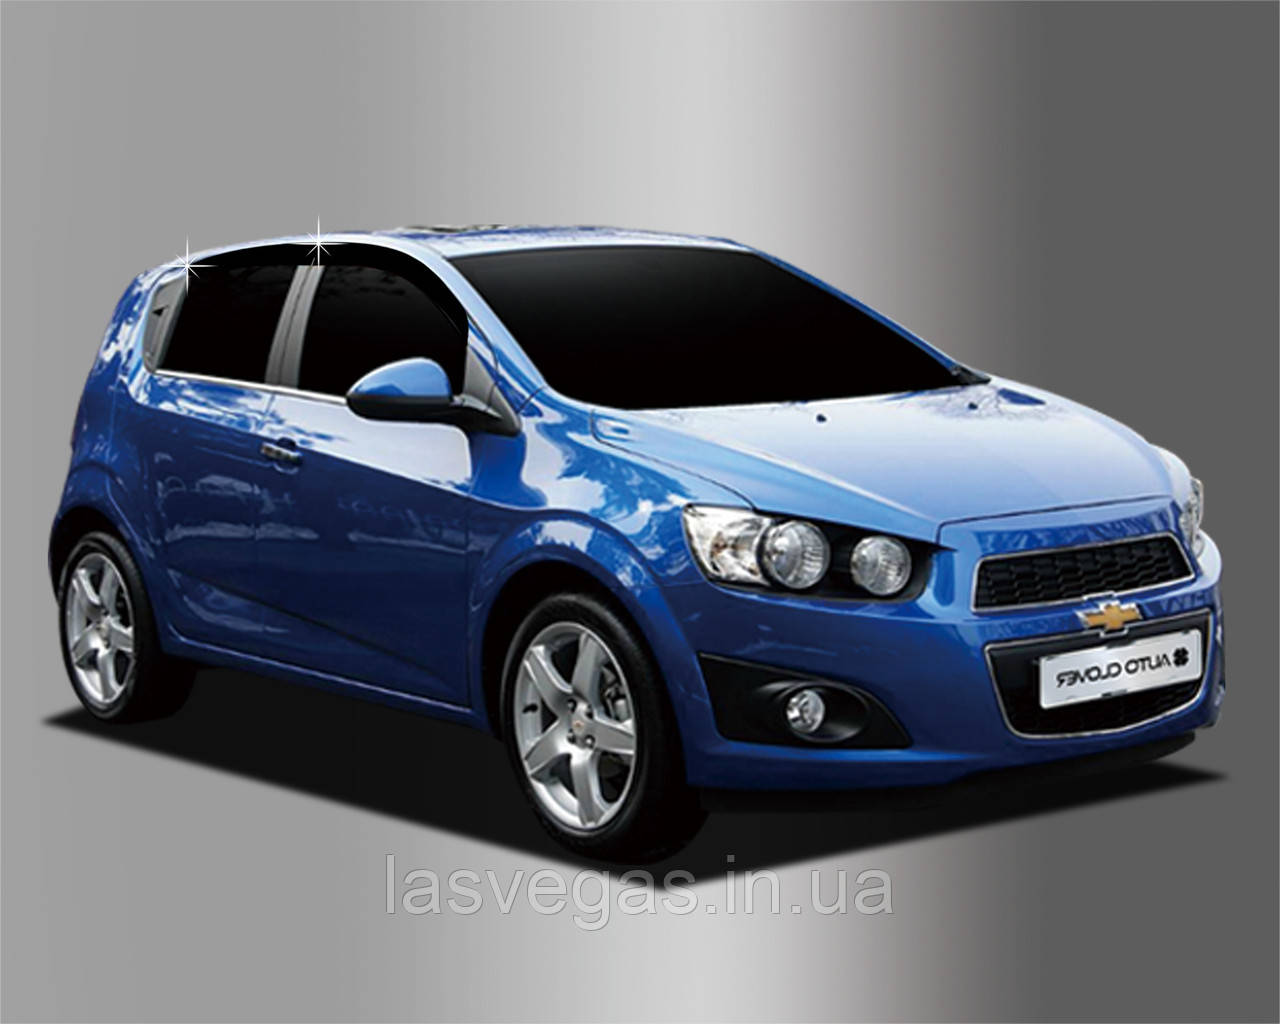 Дефлектори вікон Chevrolet Aveo Hatchback T300 2011-2021 (Autoclover/Корея)